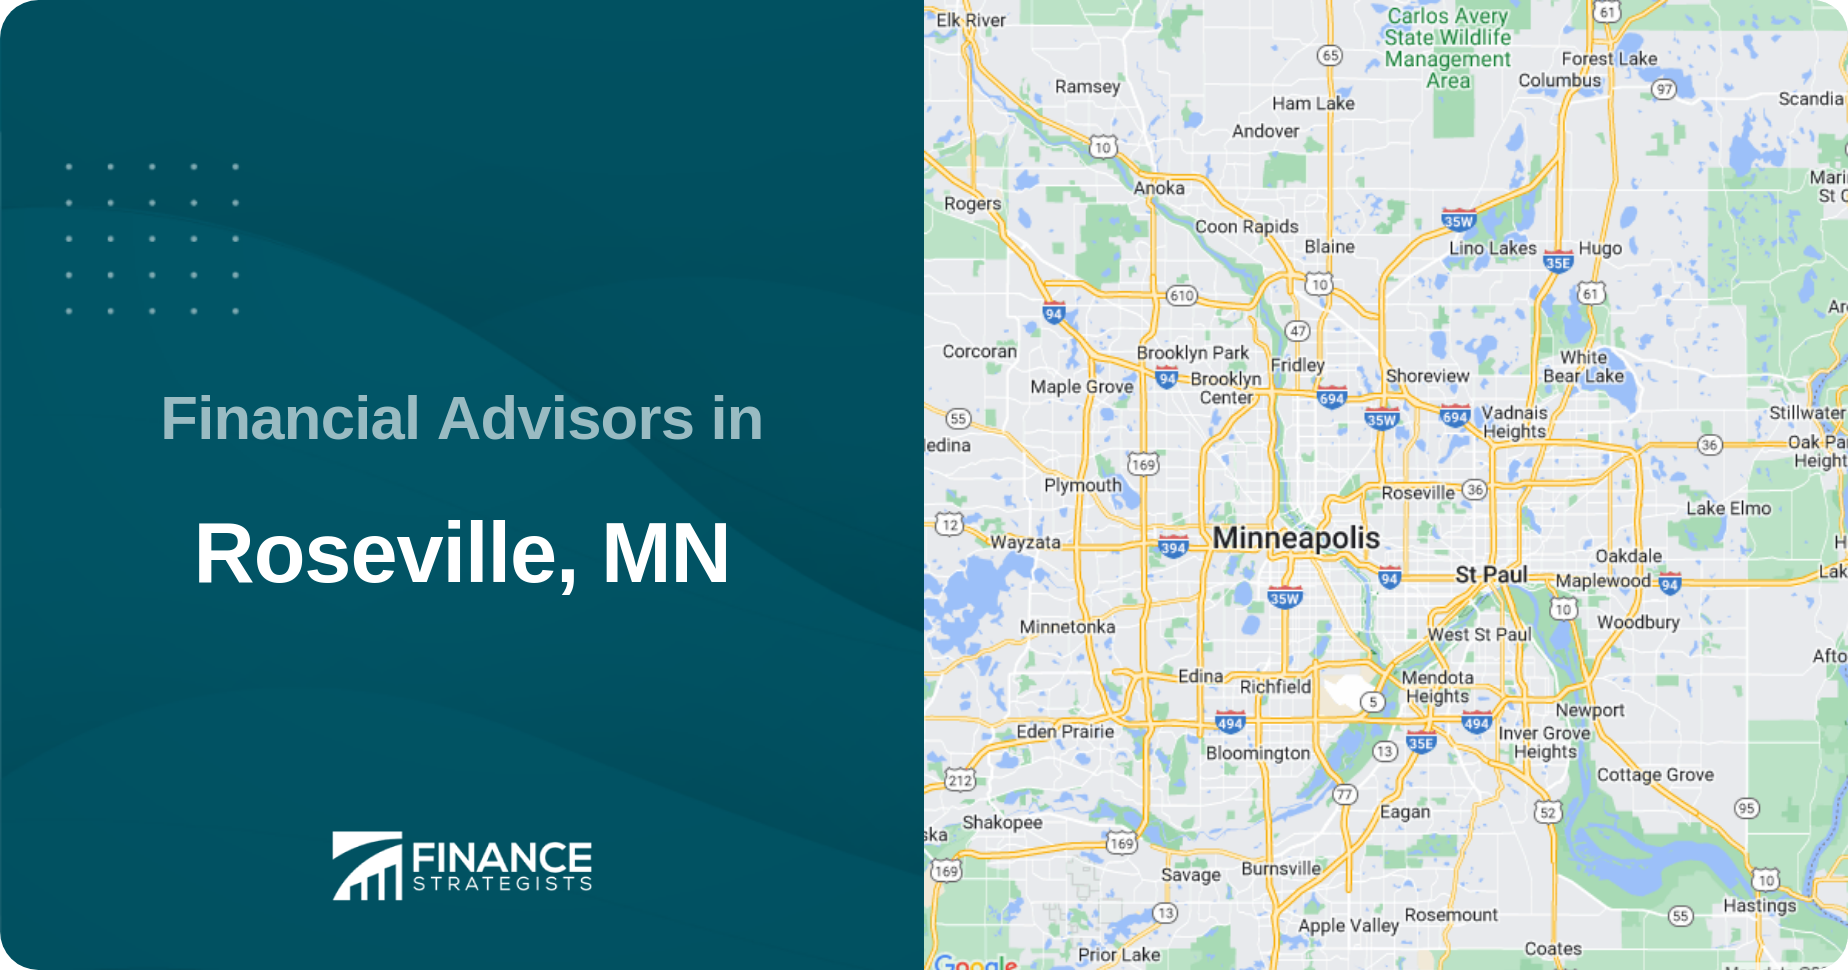 Financial Advisors in Roseville, MN